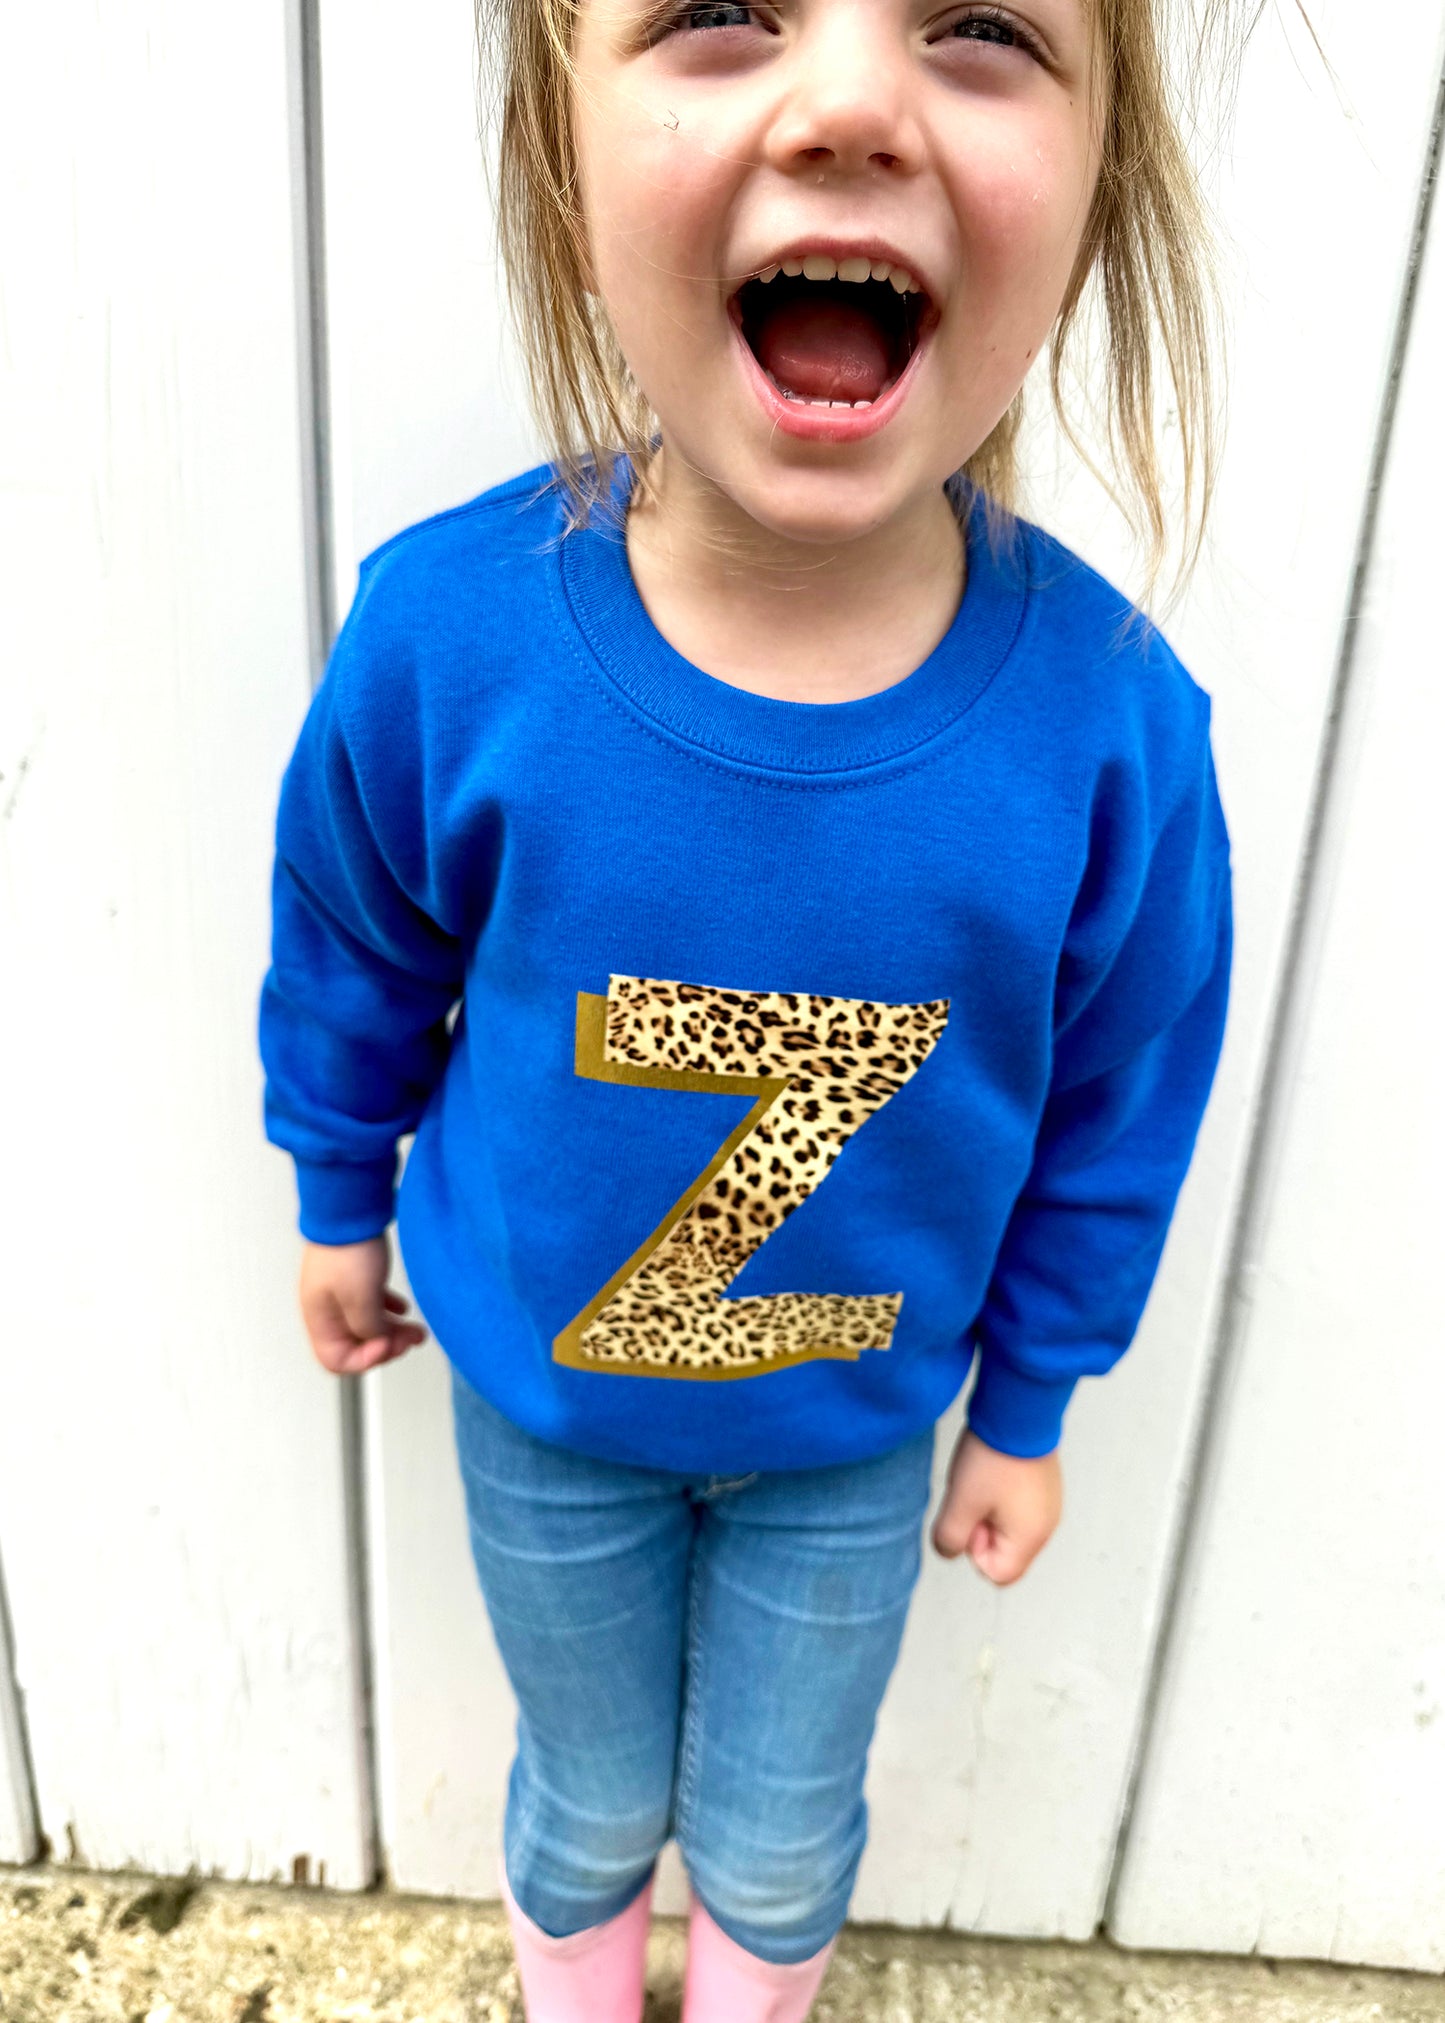 SALE Kids Personalised Metallic Gold Leopard Print Initial Sweatshirt 3-4 years